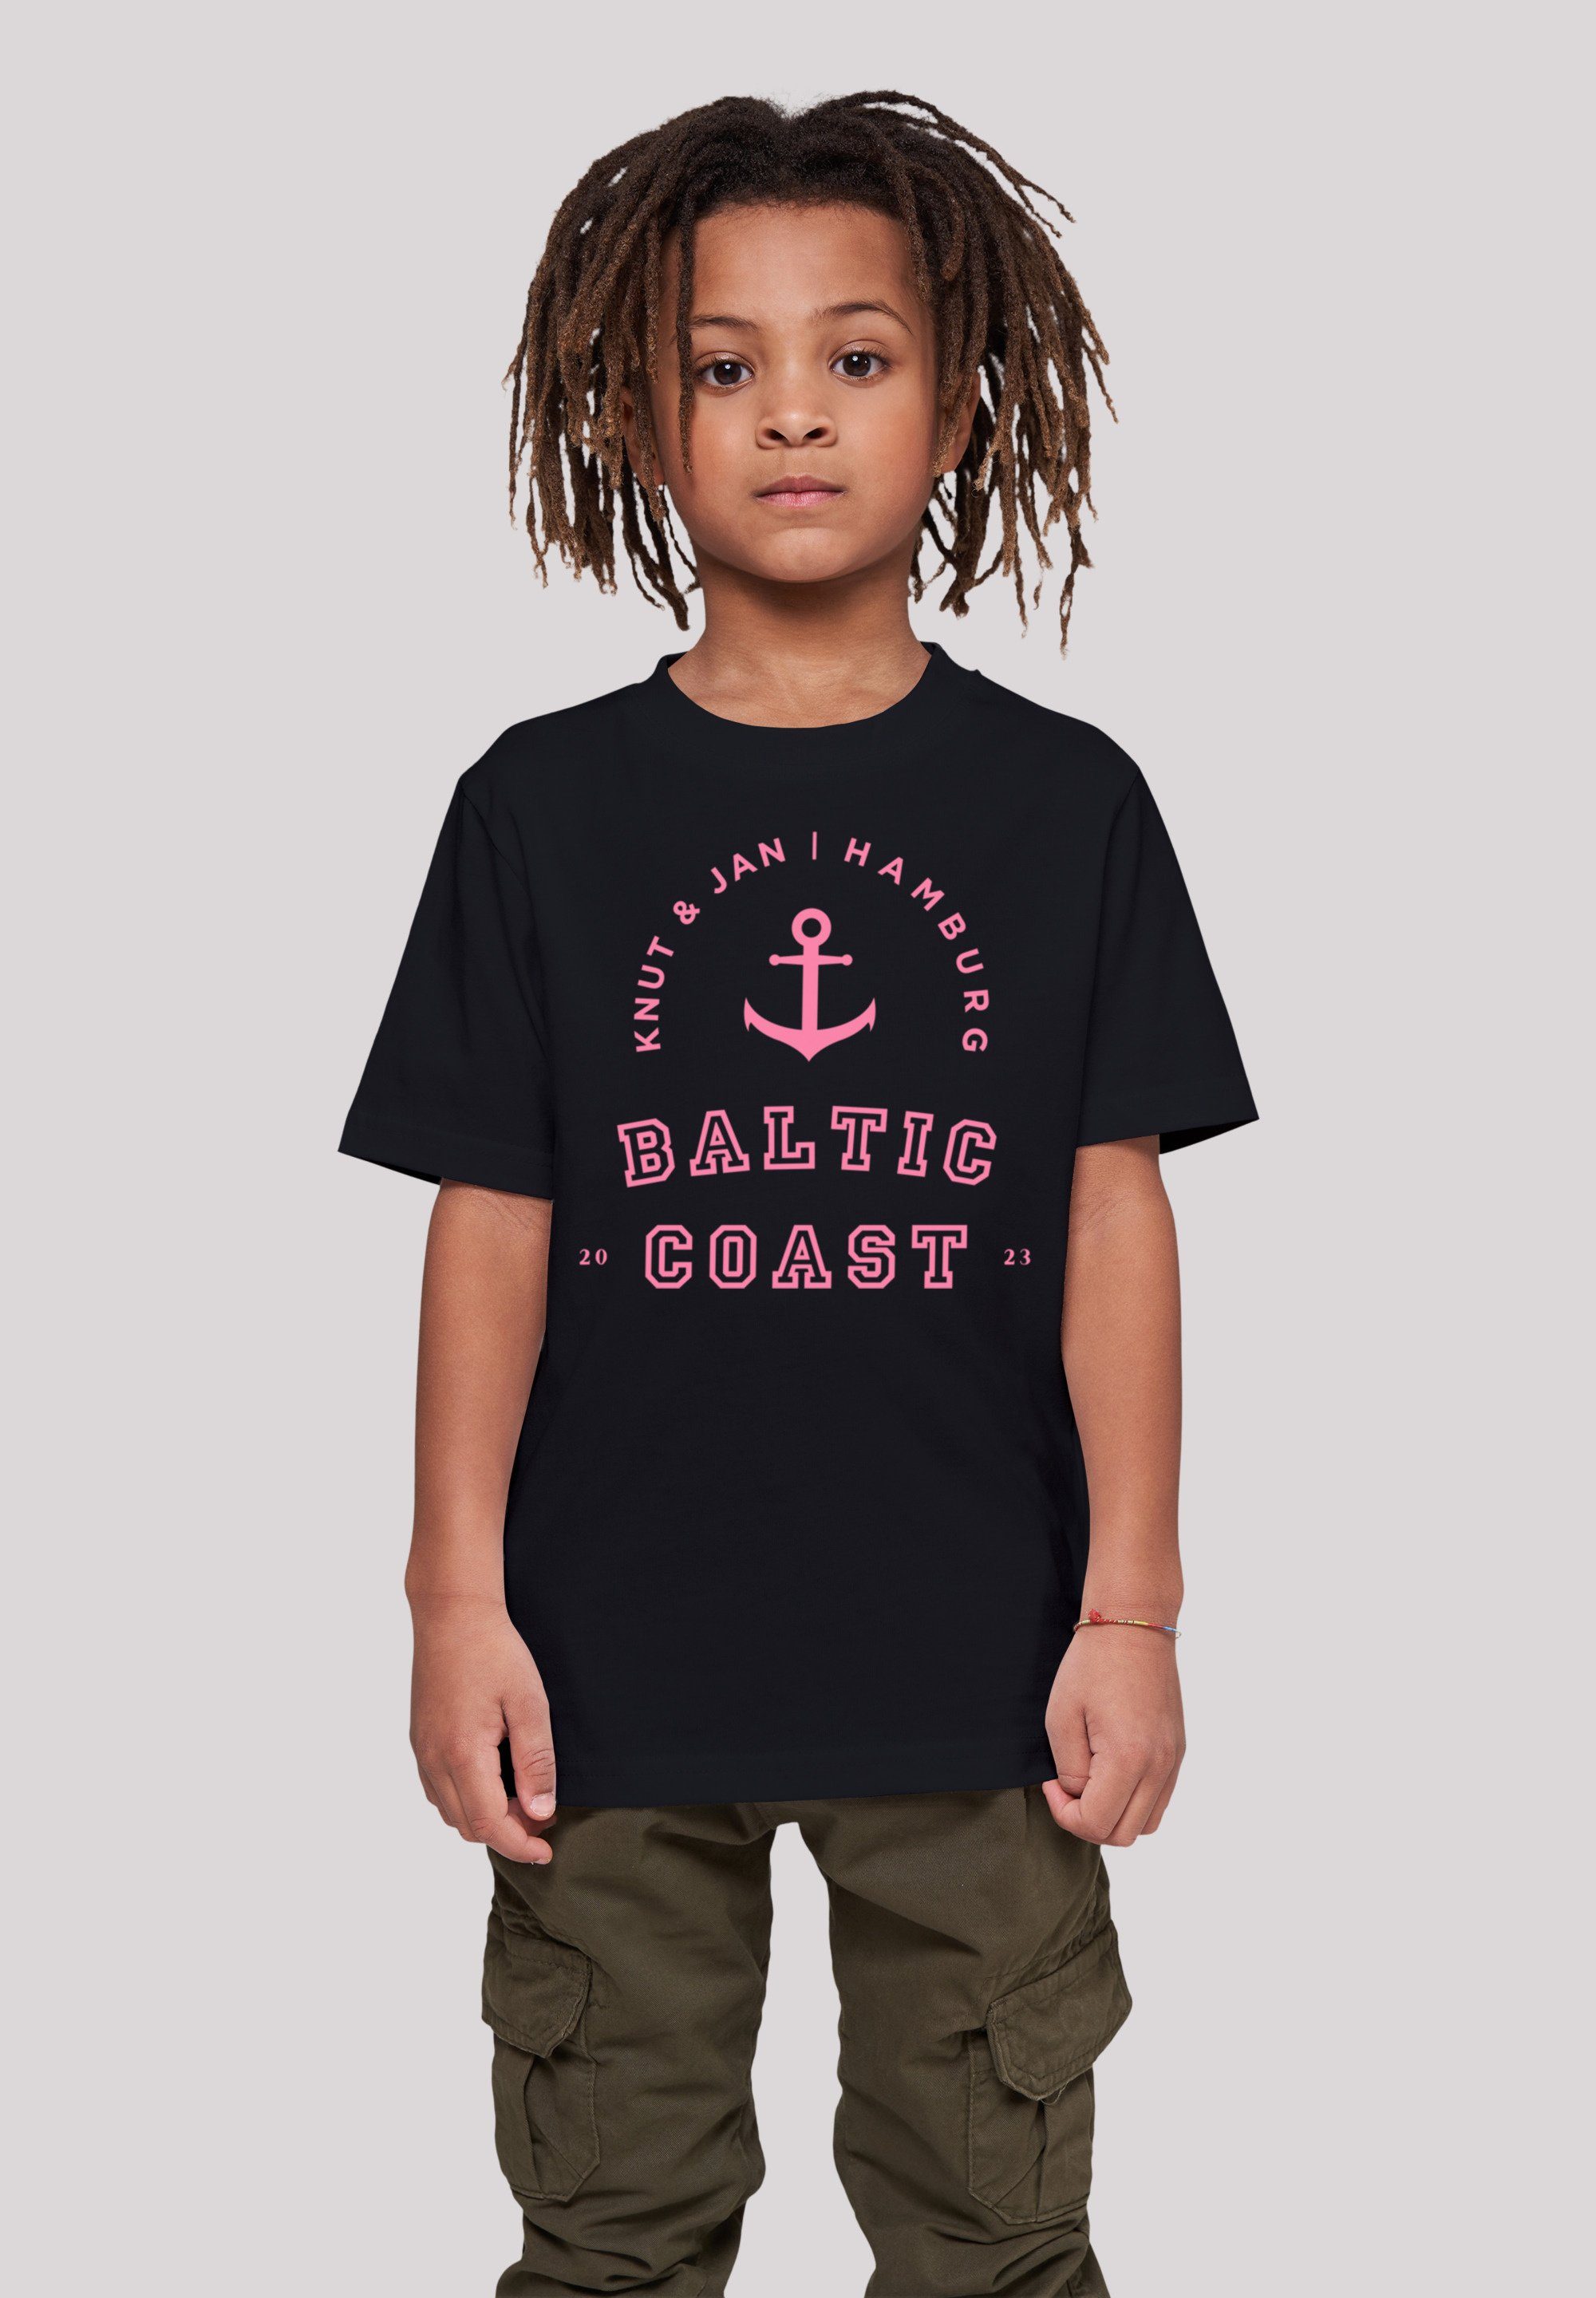 Print Hamburg Coast & Knut T-Shirt Baltic F4NT4STIC Jan